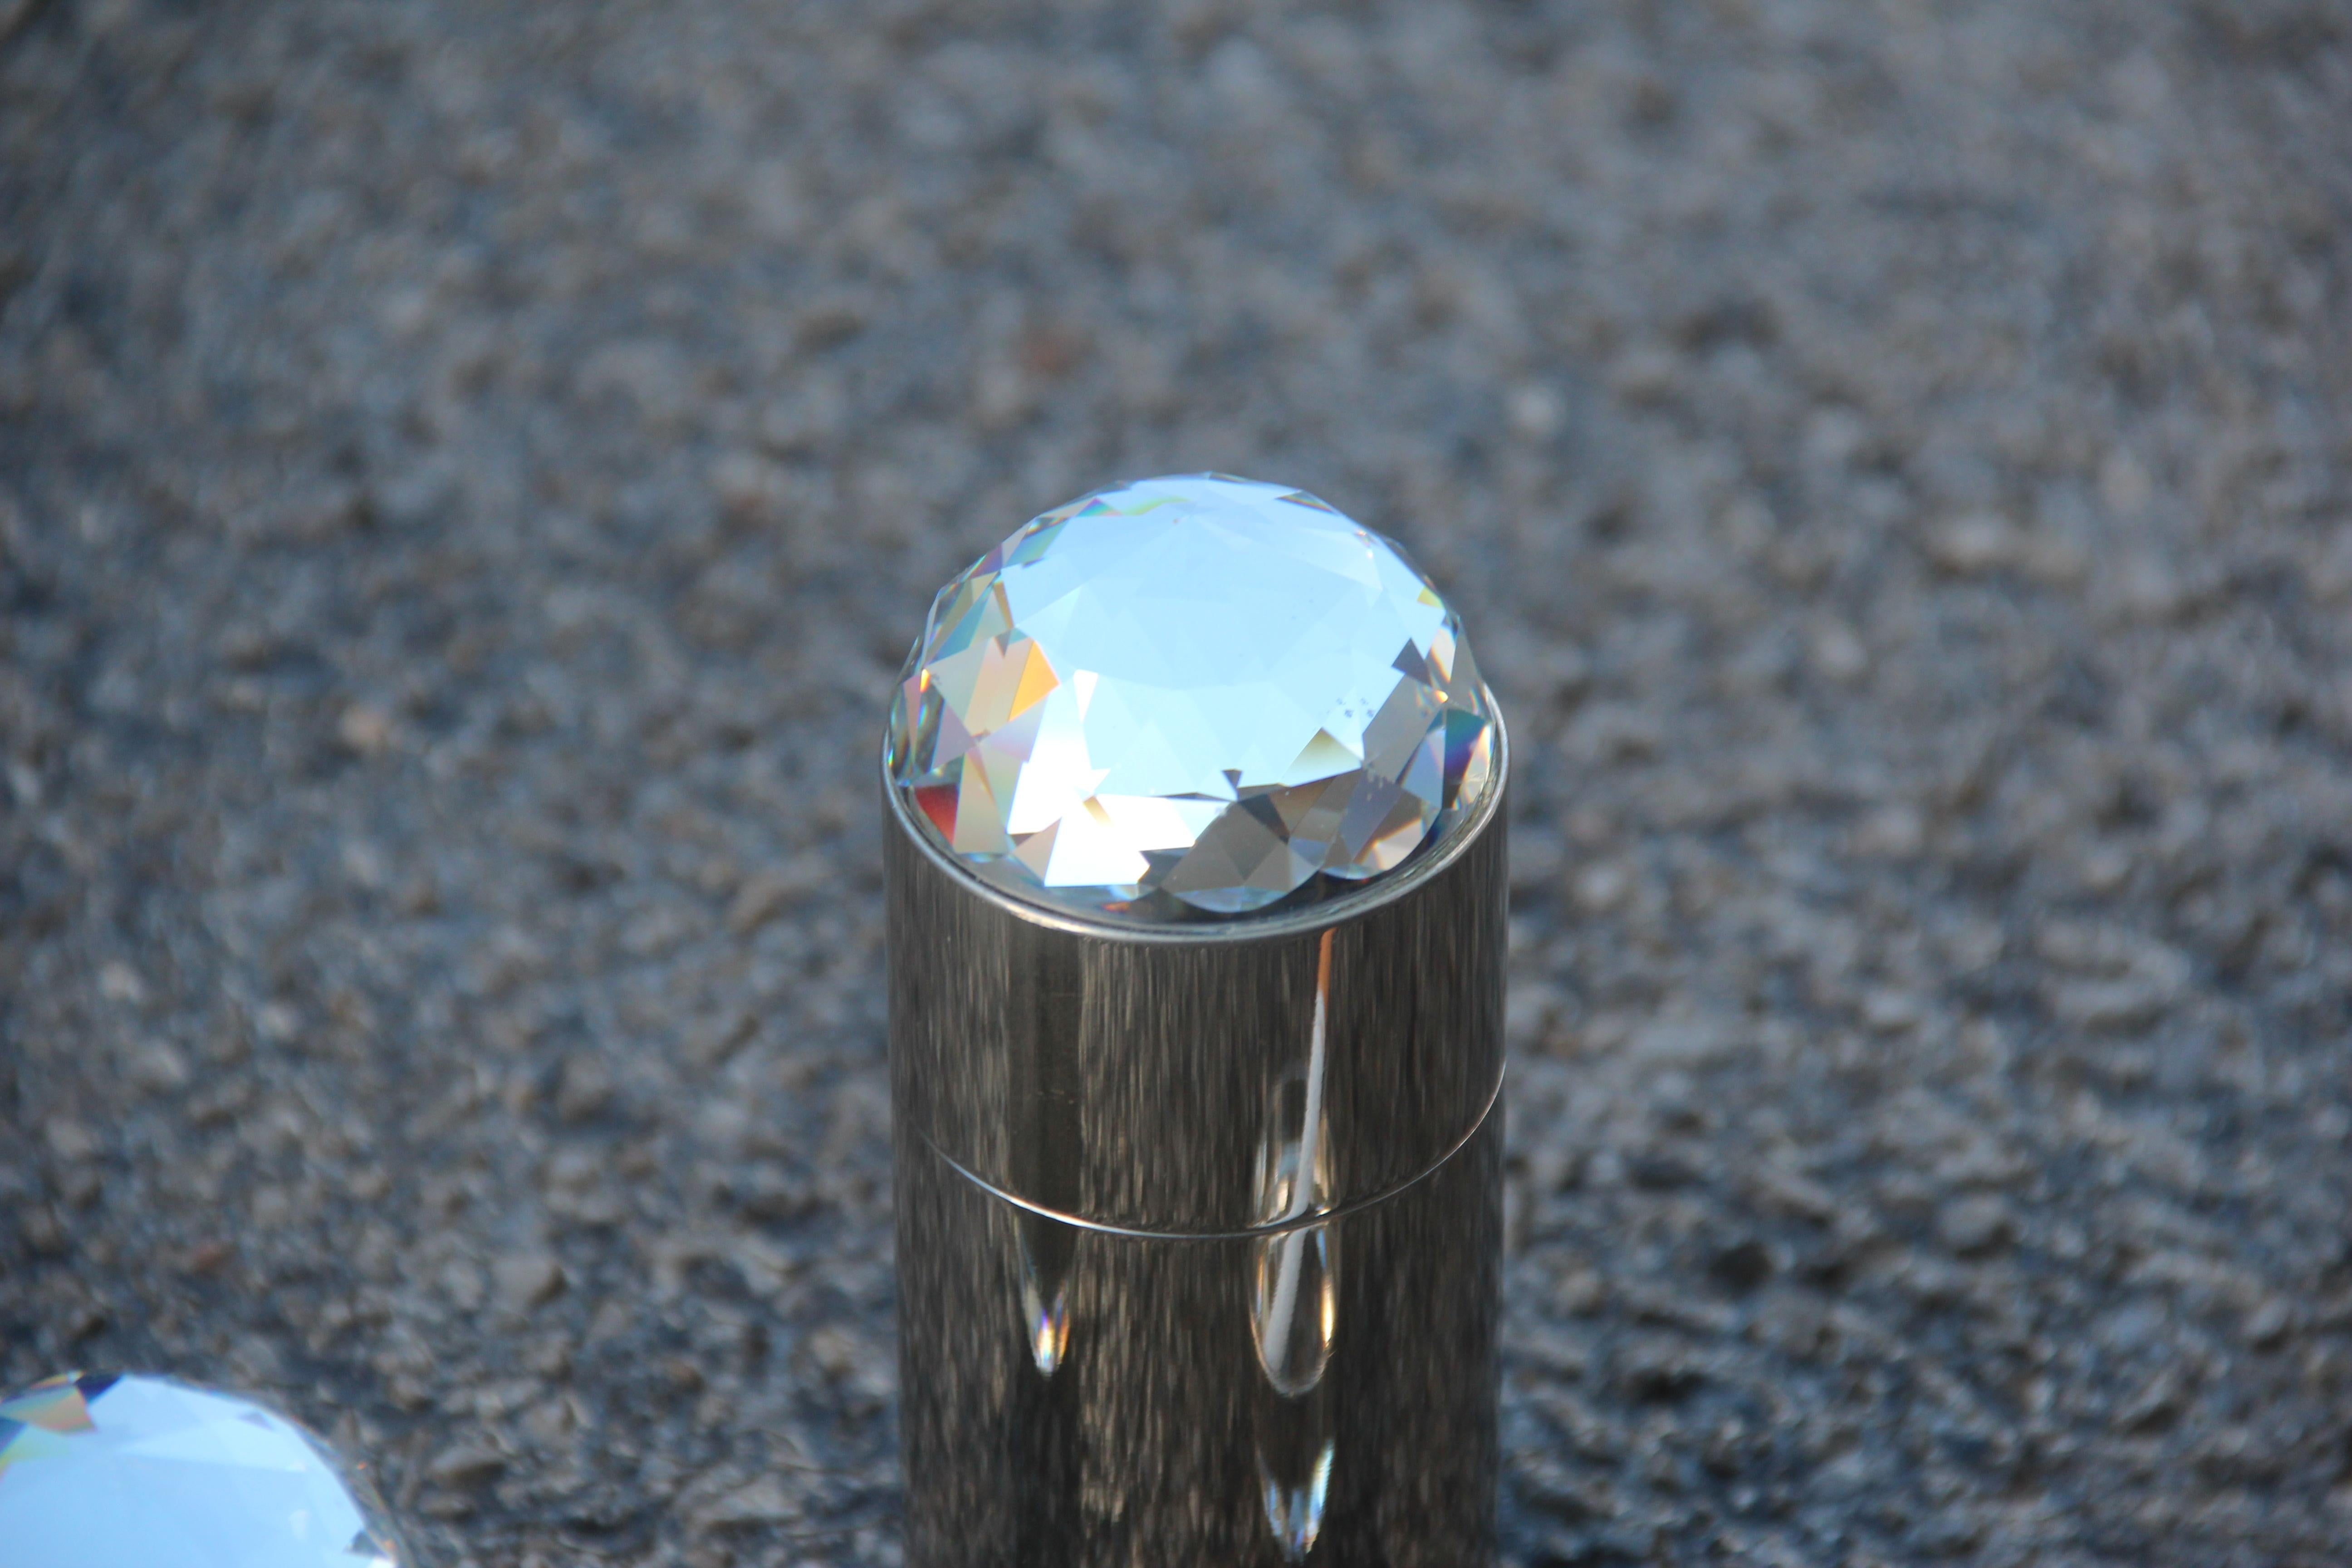 Luxus-Set Rauch Stahl und 1970 Swarovsky Kristalle für eine große Yacht Diamanten chic.
Wertvolle Objekte von großem Wert, von großer Qualität der Ausführung.
Zigarettenschachtel Höhe cm.13.5, Durchmesser cm.5.
Feuerzeug Höhe cm.9, Durchmesser